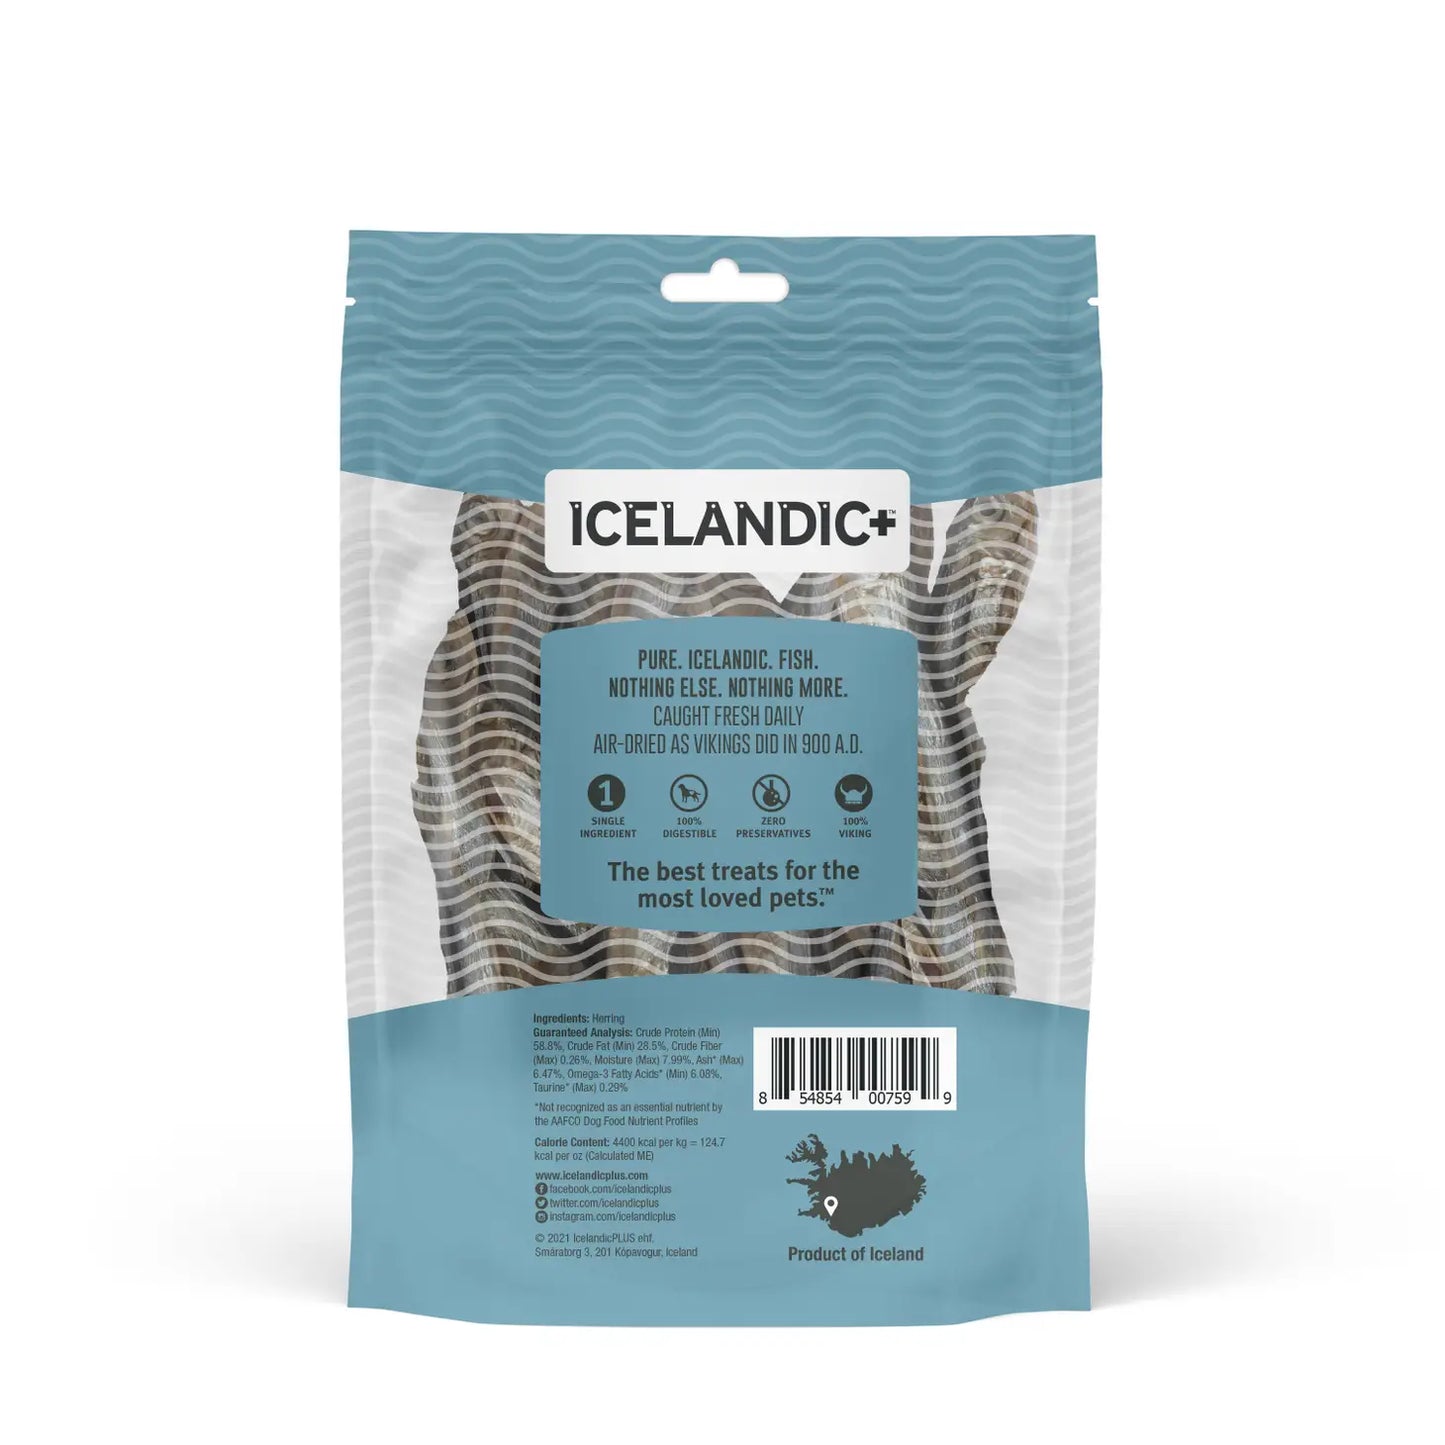 Icelandic+ Herring Whole Fish Cat or Dog Treats 1.5-oz Bag